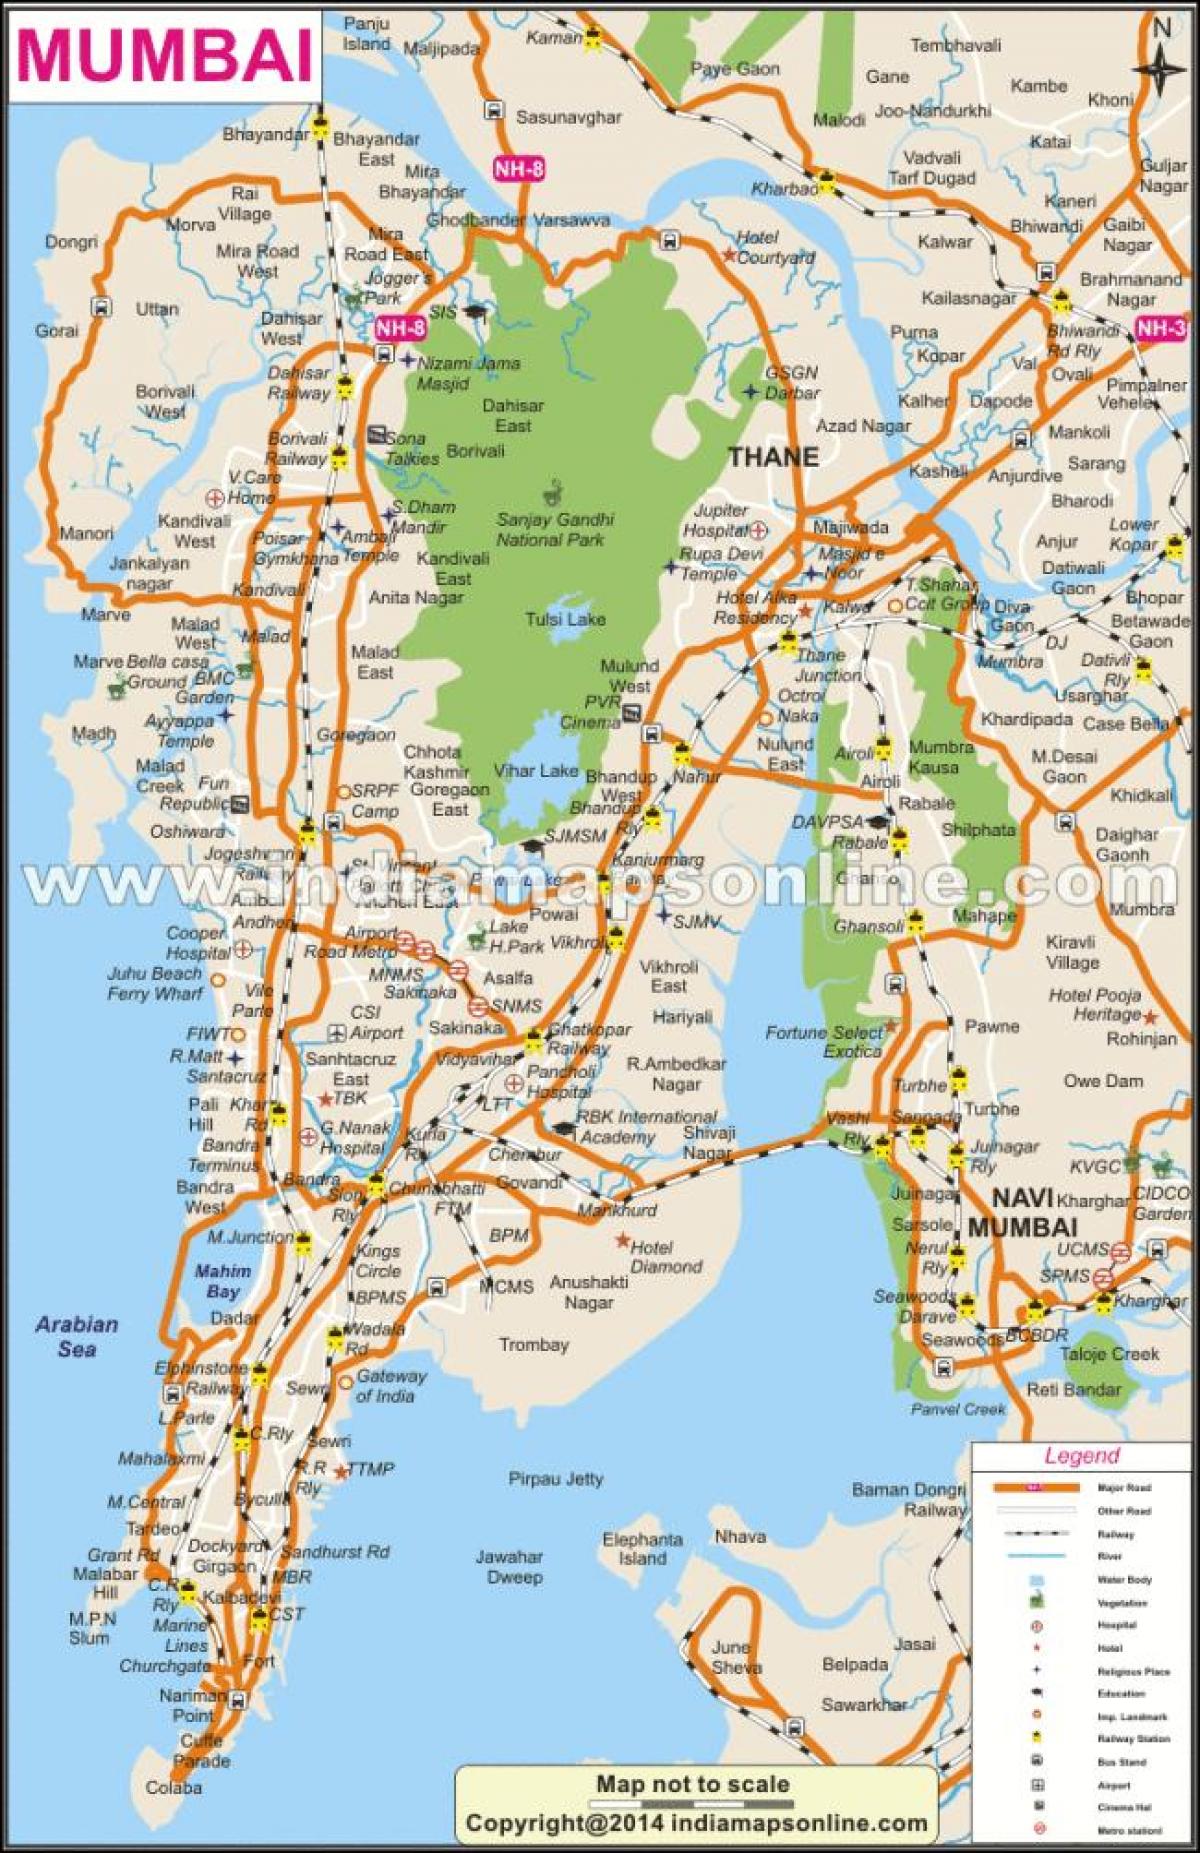 hartă completă a Mumbai